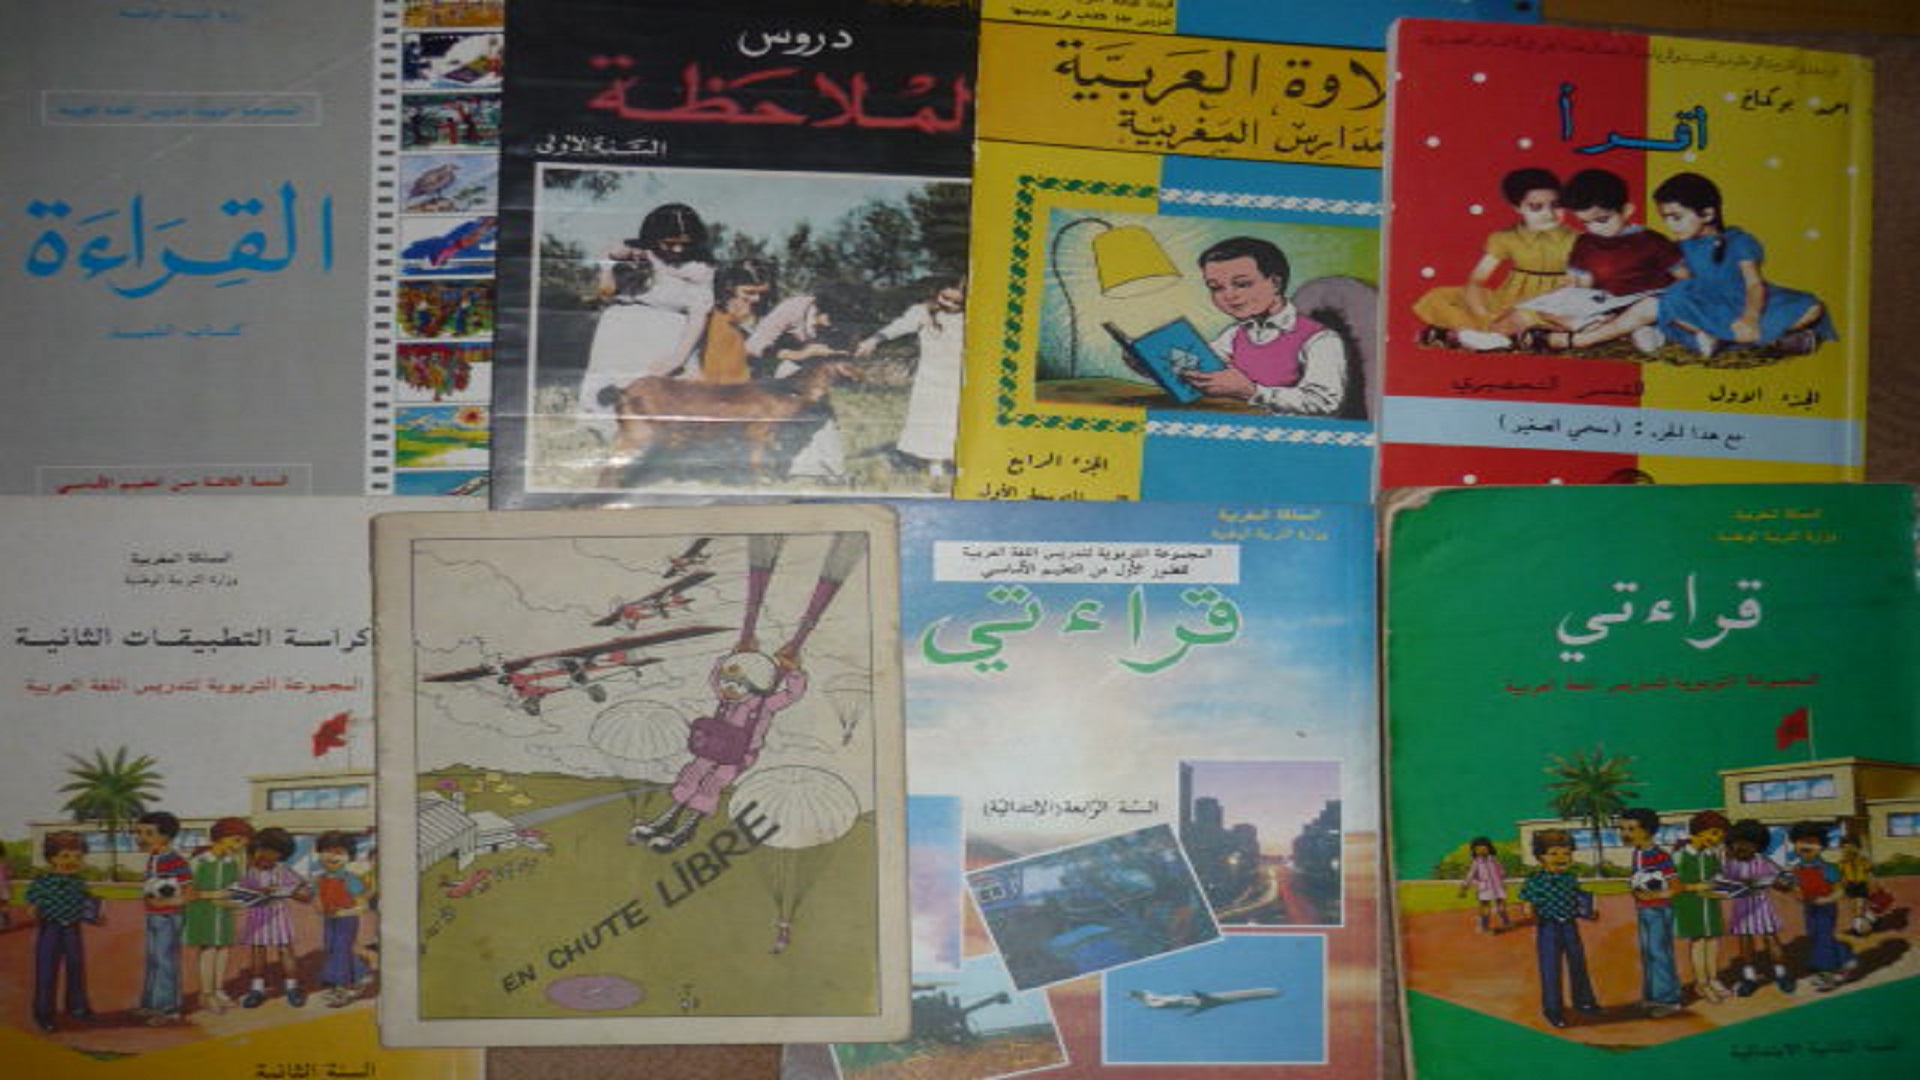 المحطات الكبرى لتاريخ الكتاب المدرسي المغربي